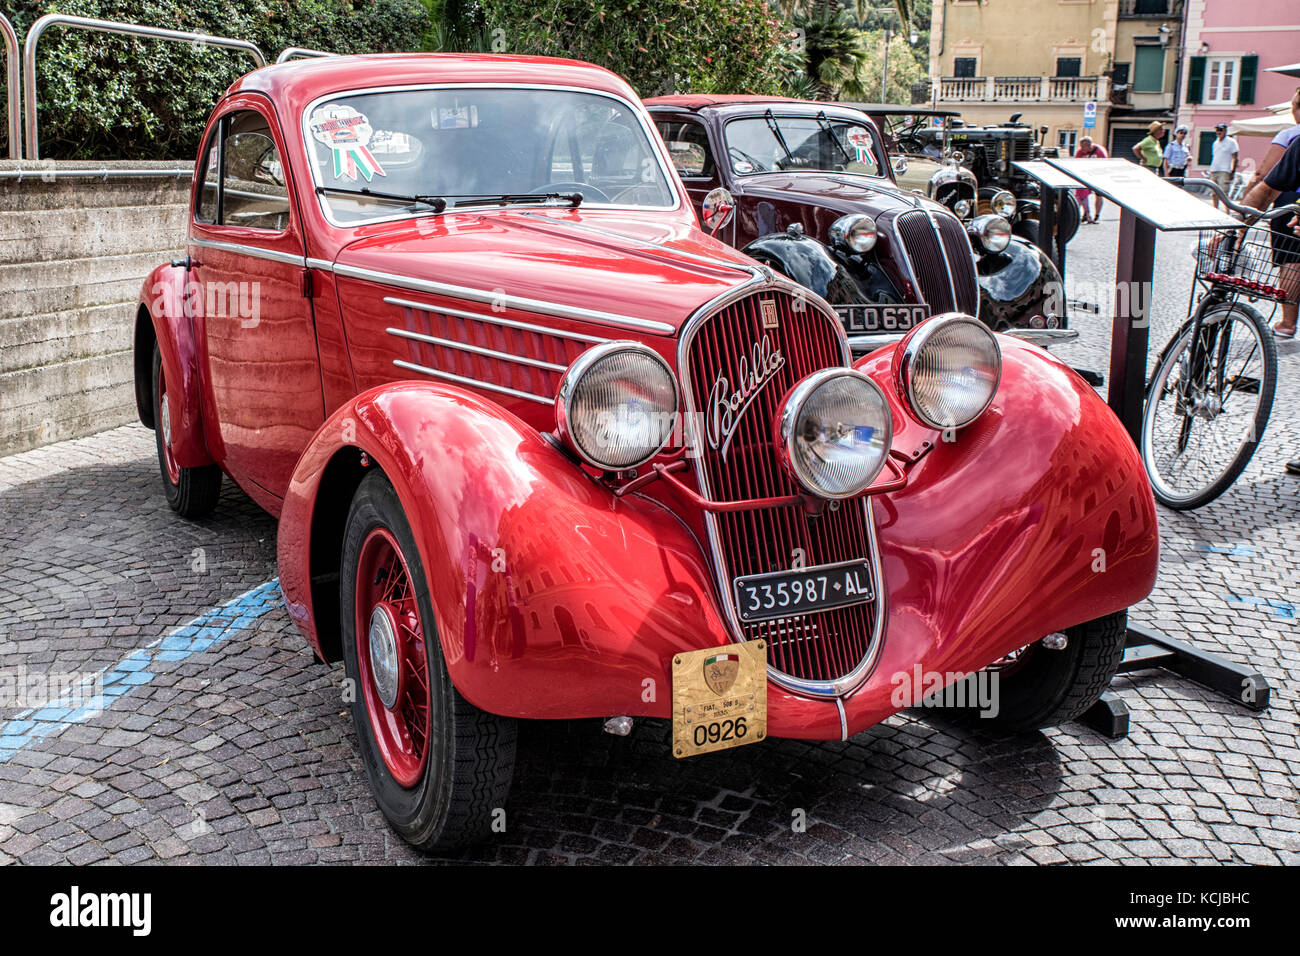 Italie Ligurie Italie Ligurie vintage car réunion à Celle Ligure - fiat balilla 1935 Banque D'Images